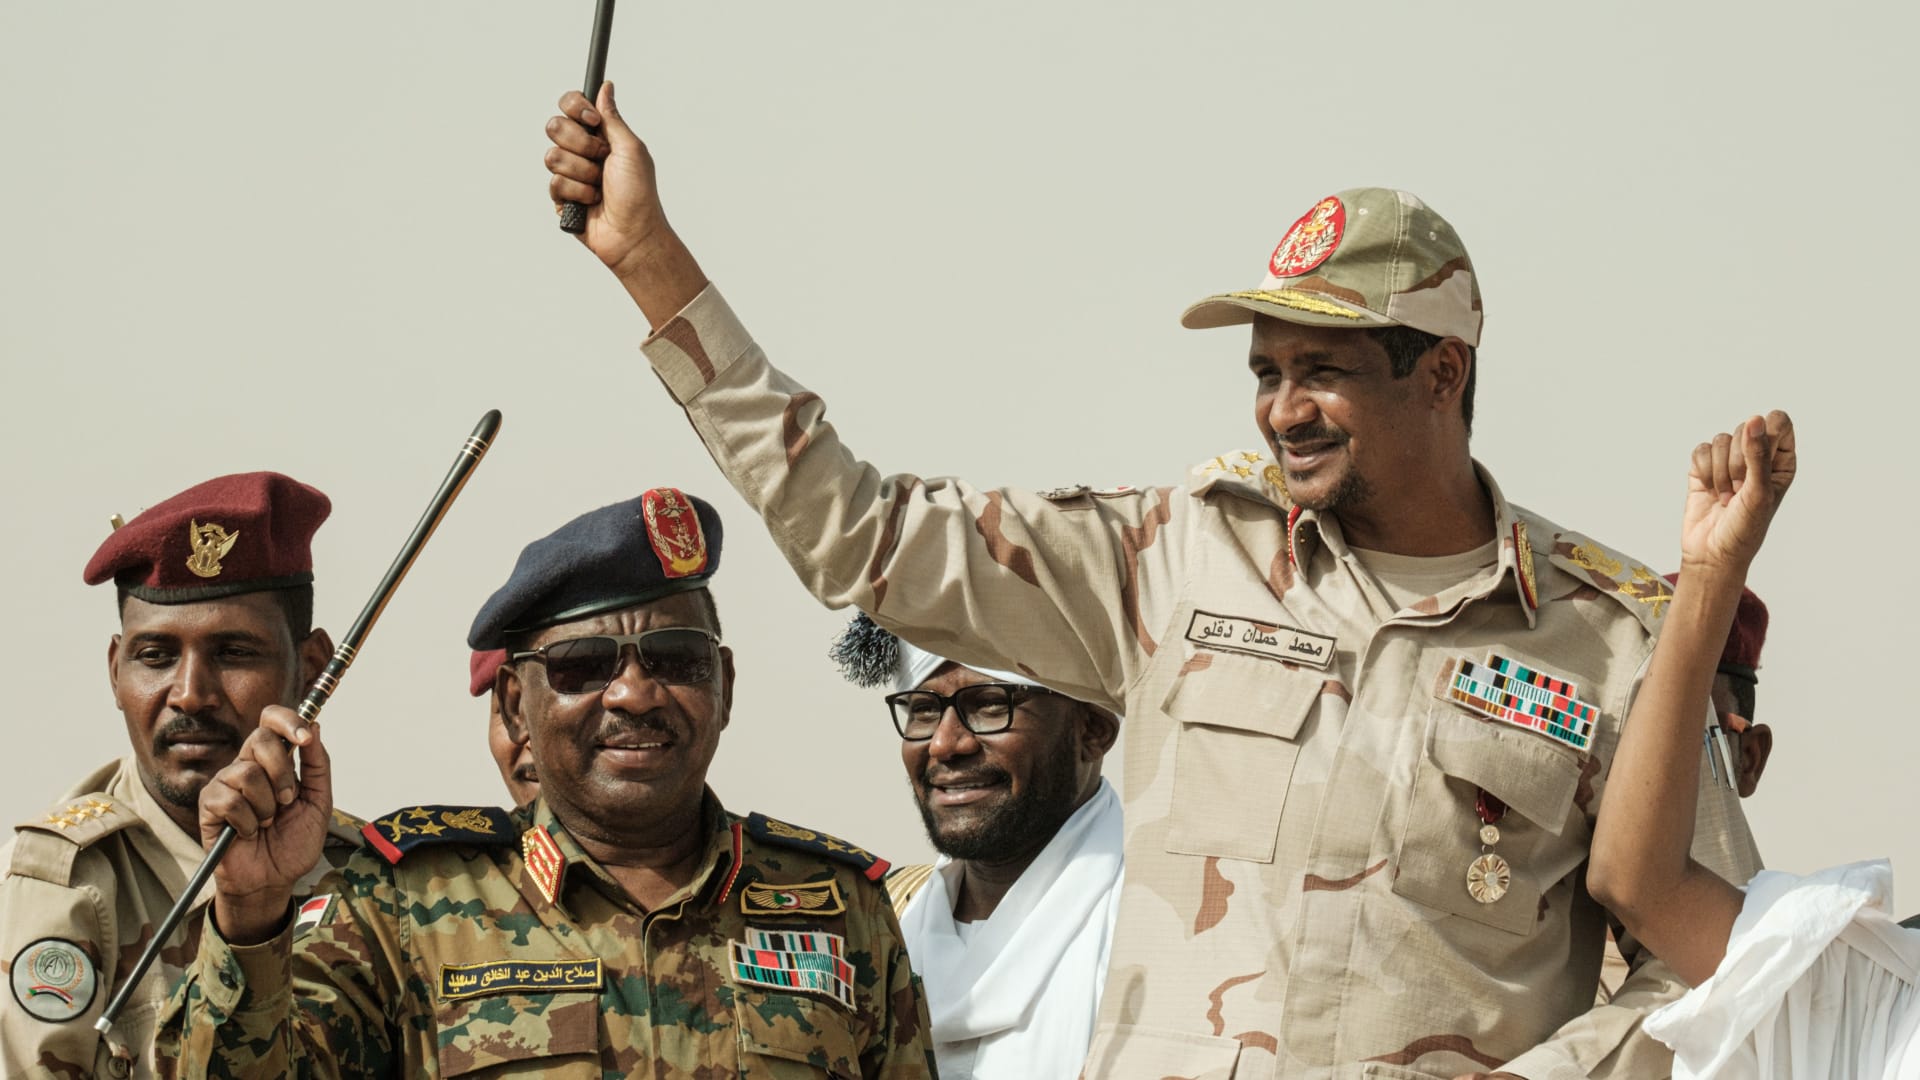 دخان يتصاعد من القصر الرئاسي.. ومخاوف من عودة الحرب الأهلية في السودان